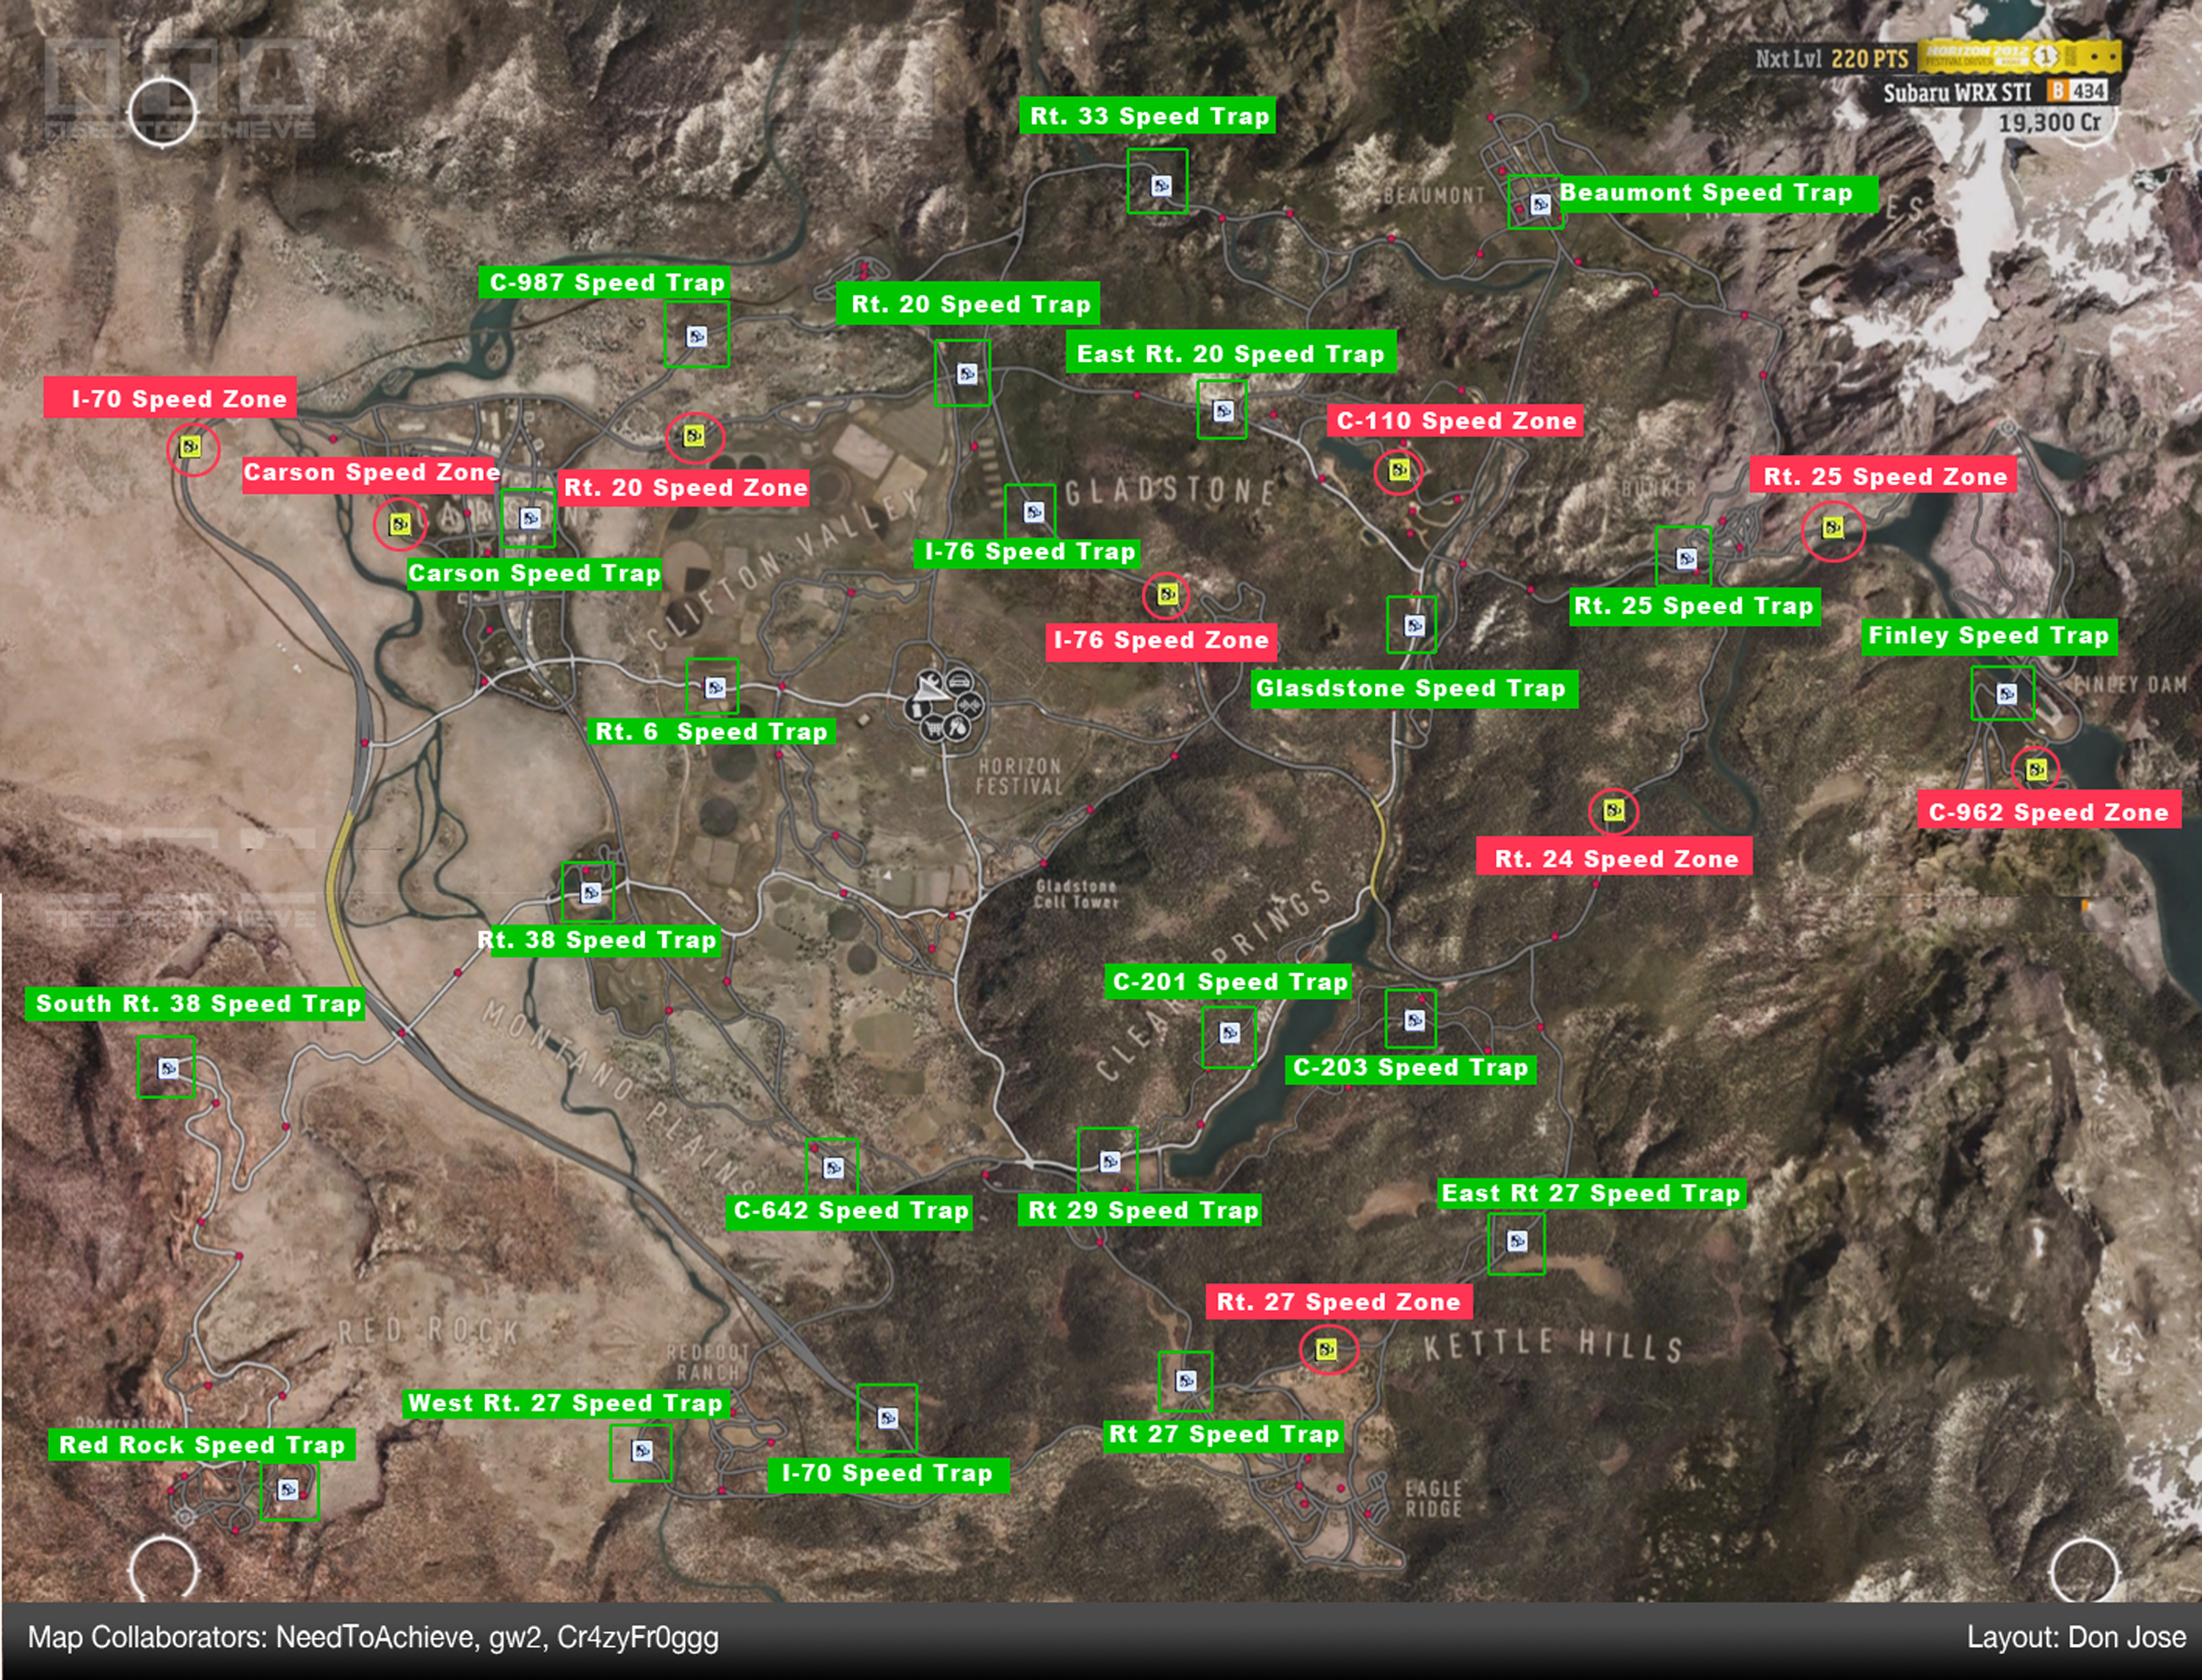 Forza Horizon 2 (X1) Signs, Barns, Radars Map